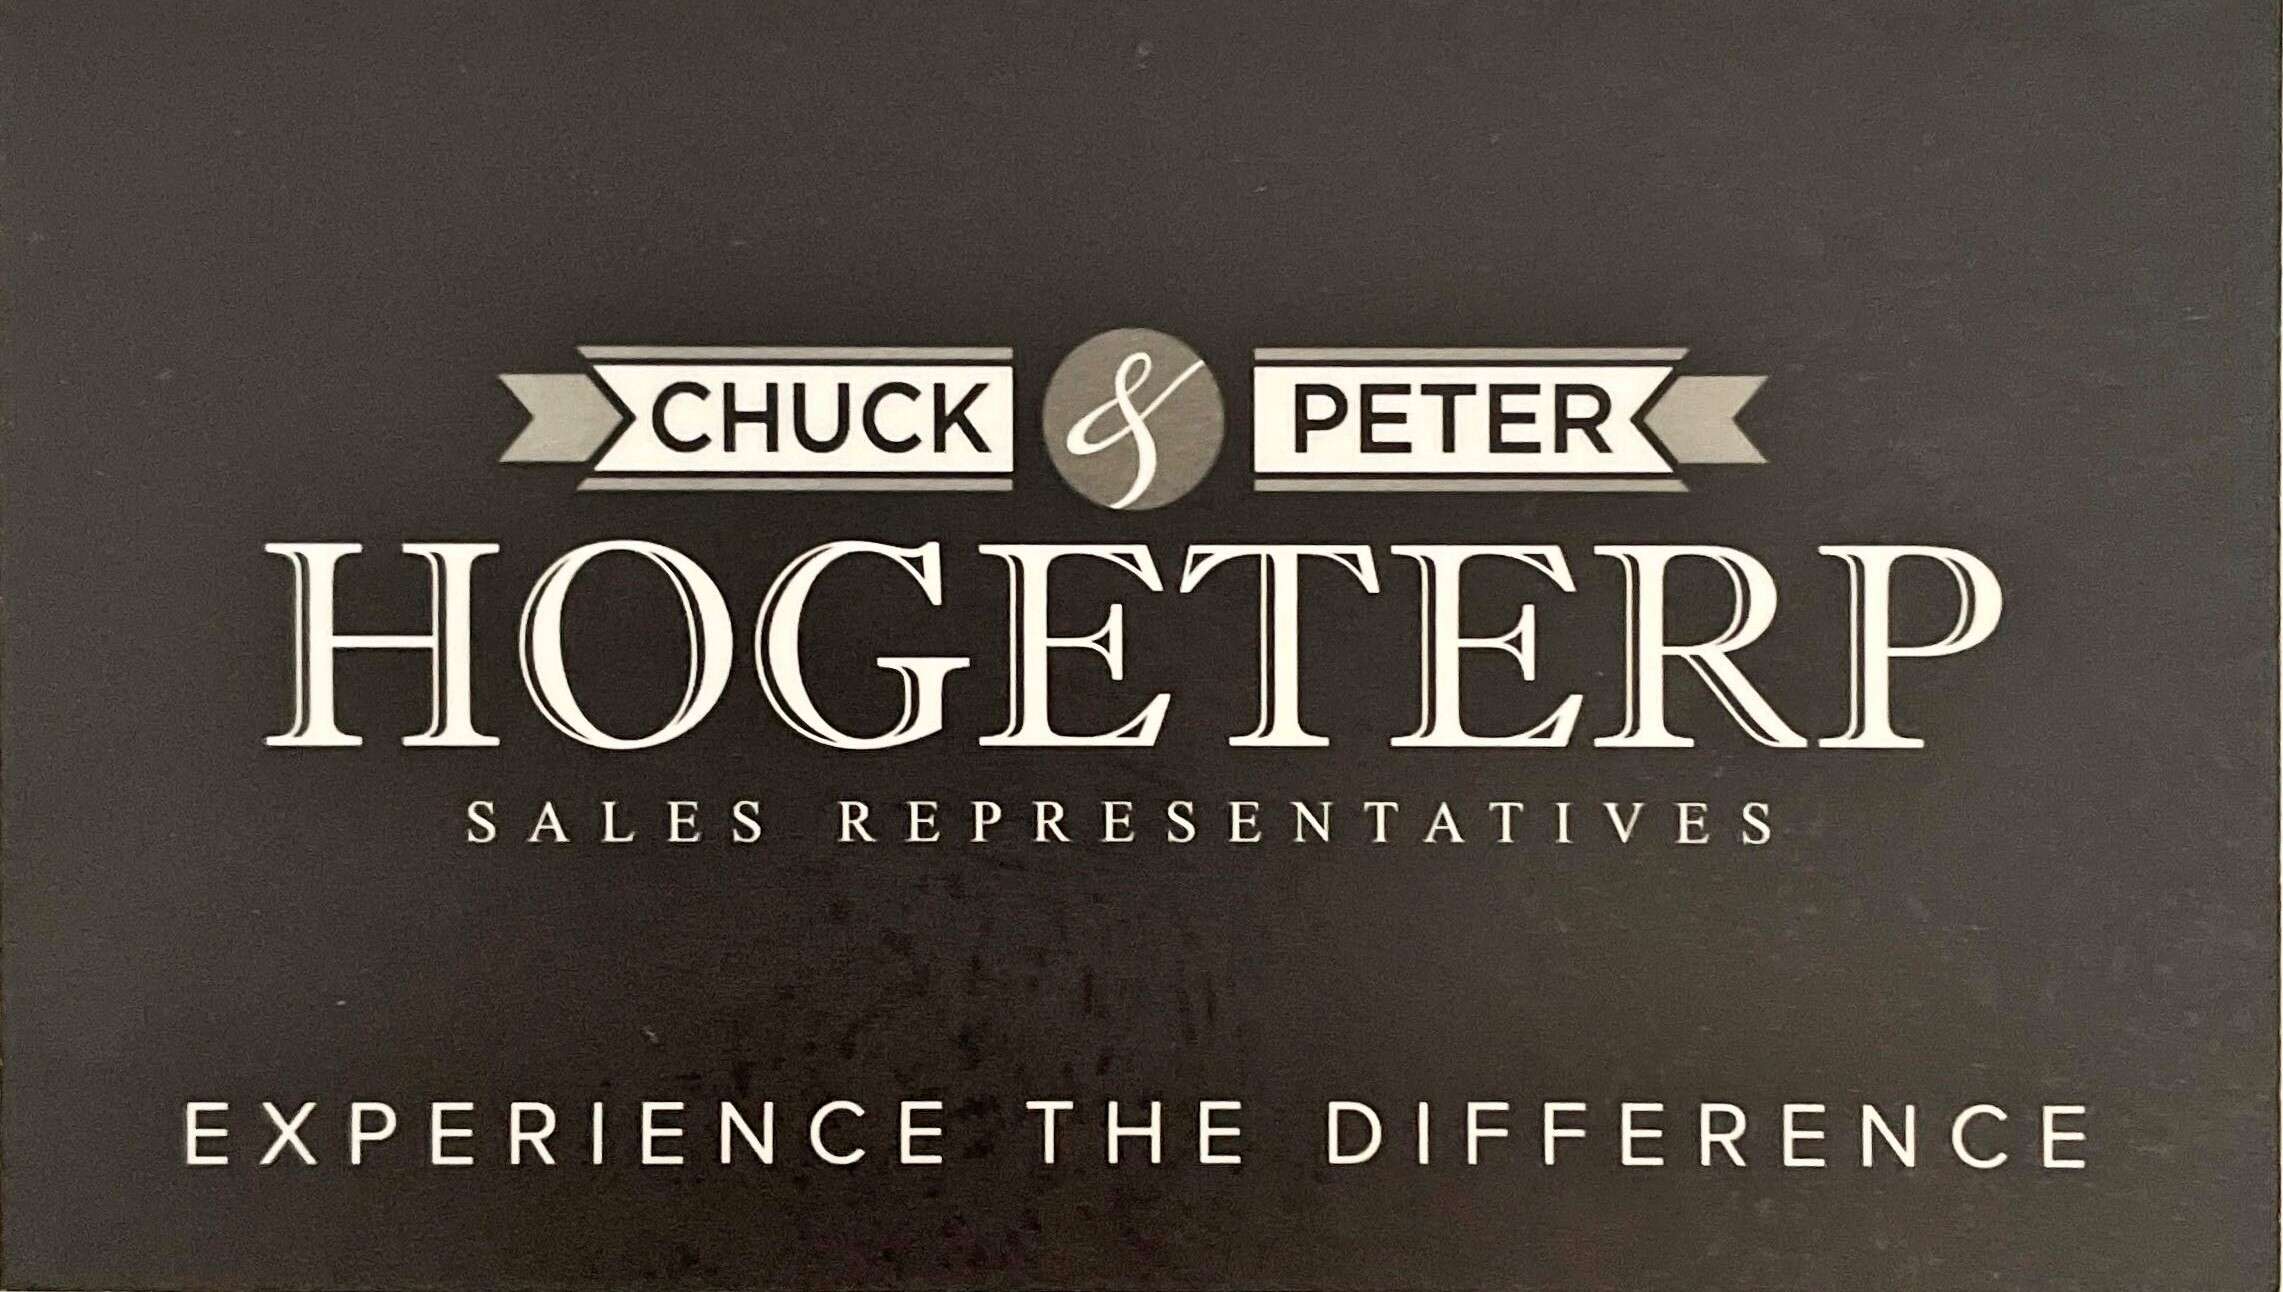 Chuck and Peter Hogeterp